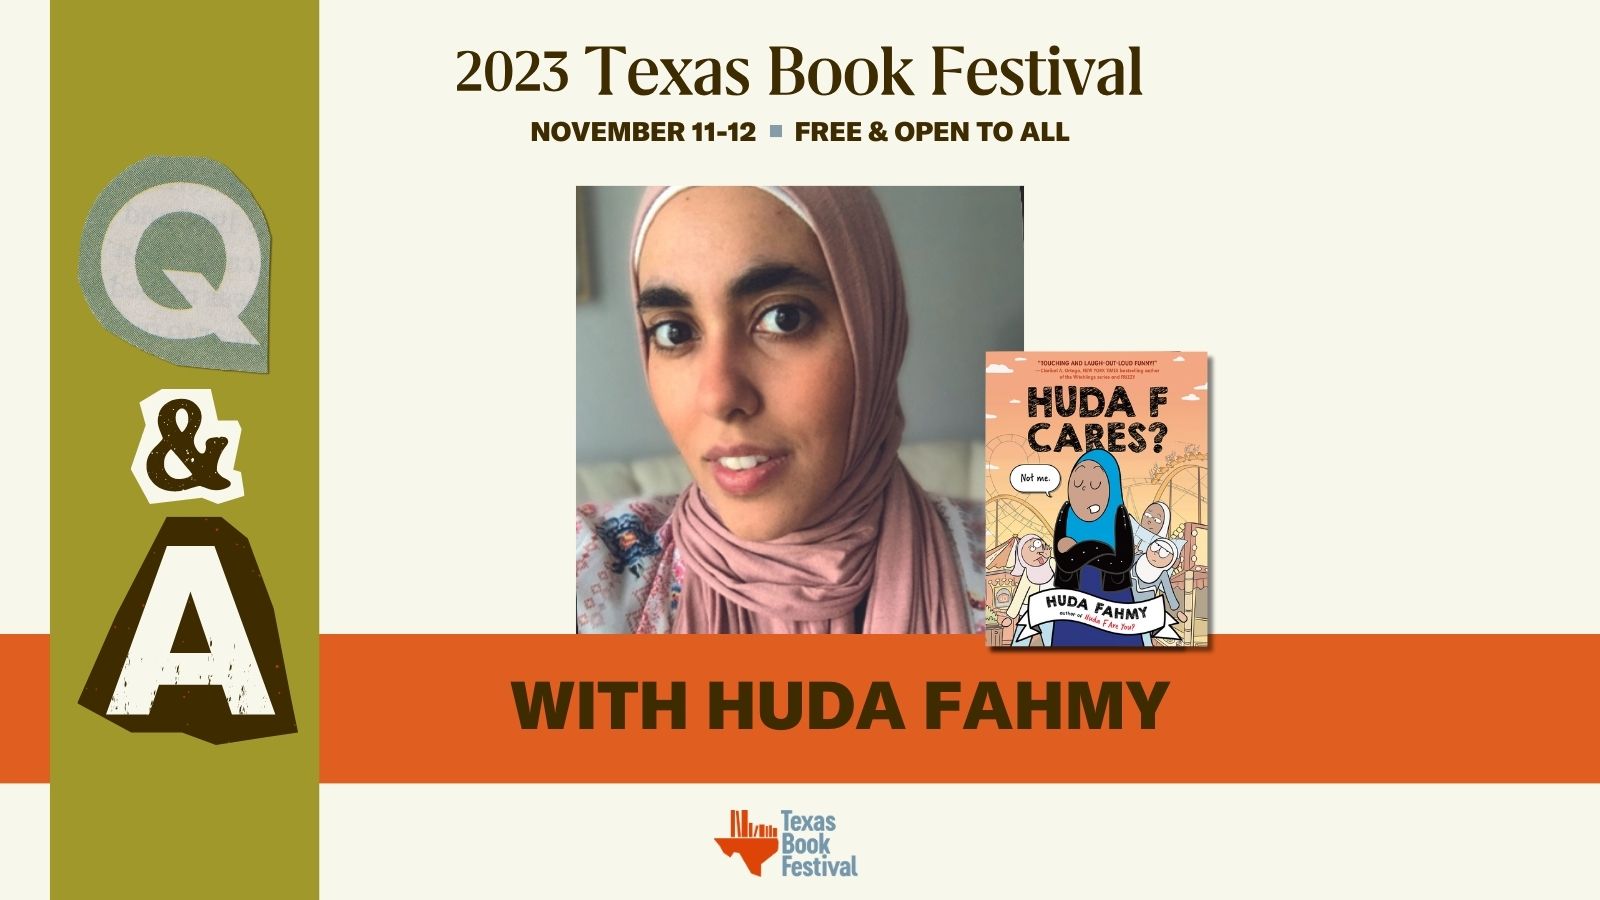 Q&A With Huda Fahmy